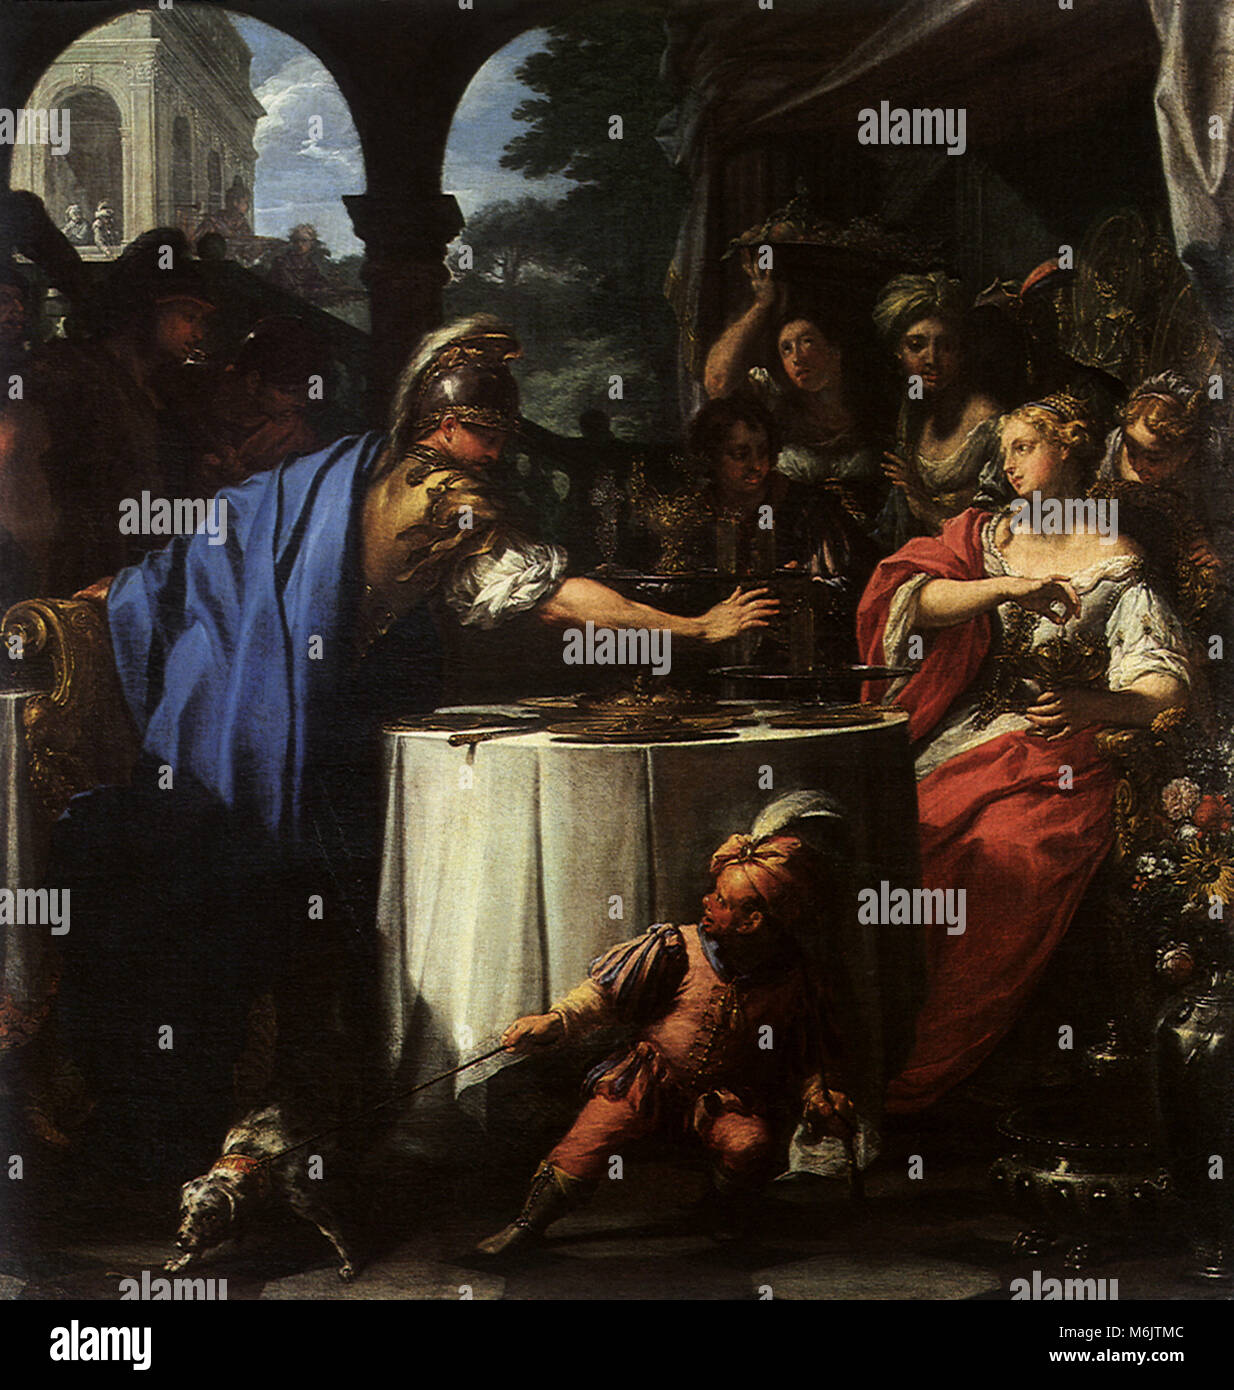 The Banquet of Mark Antony and Cleopatra 1715, Trevisani, Francesco, or Il Ro, 1715. Stock Photo